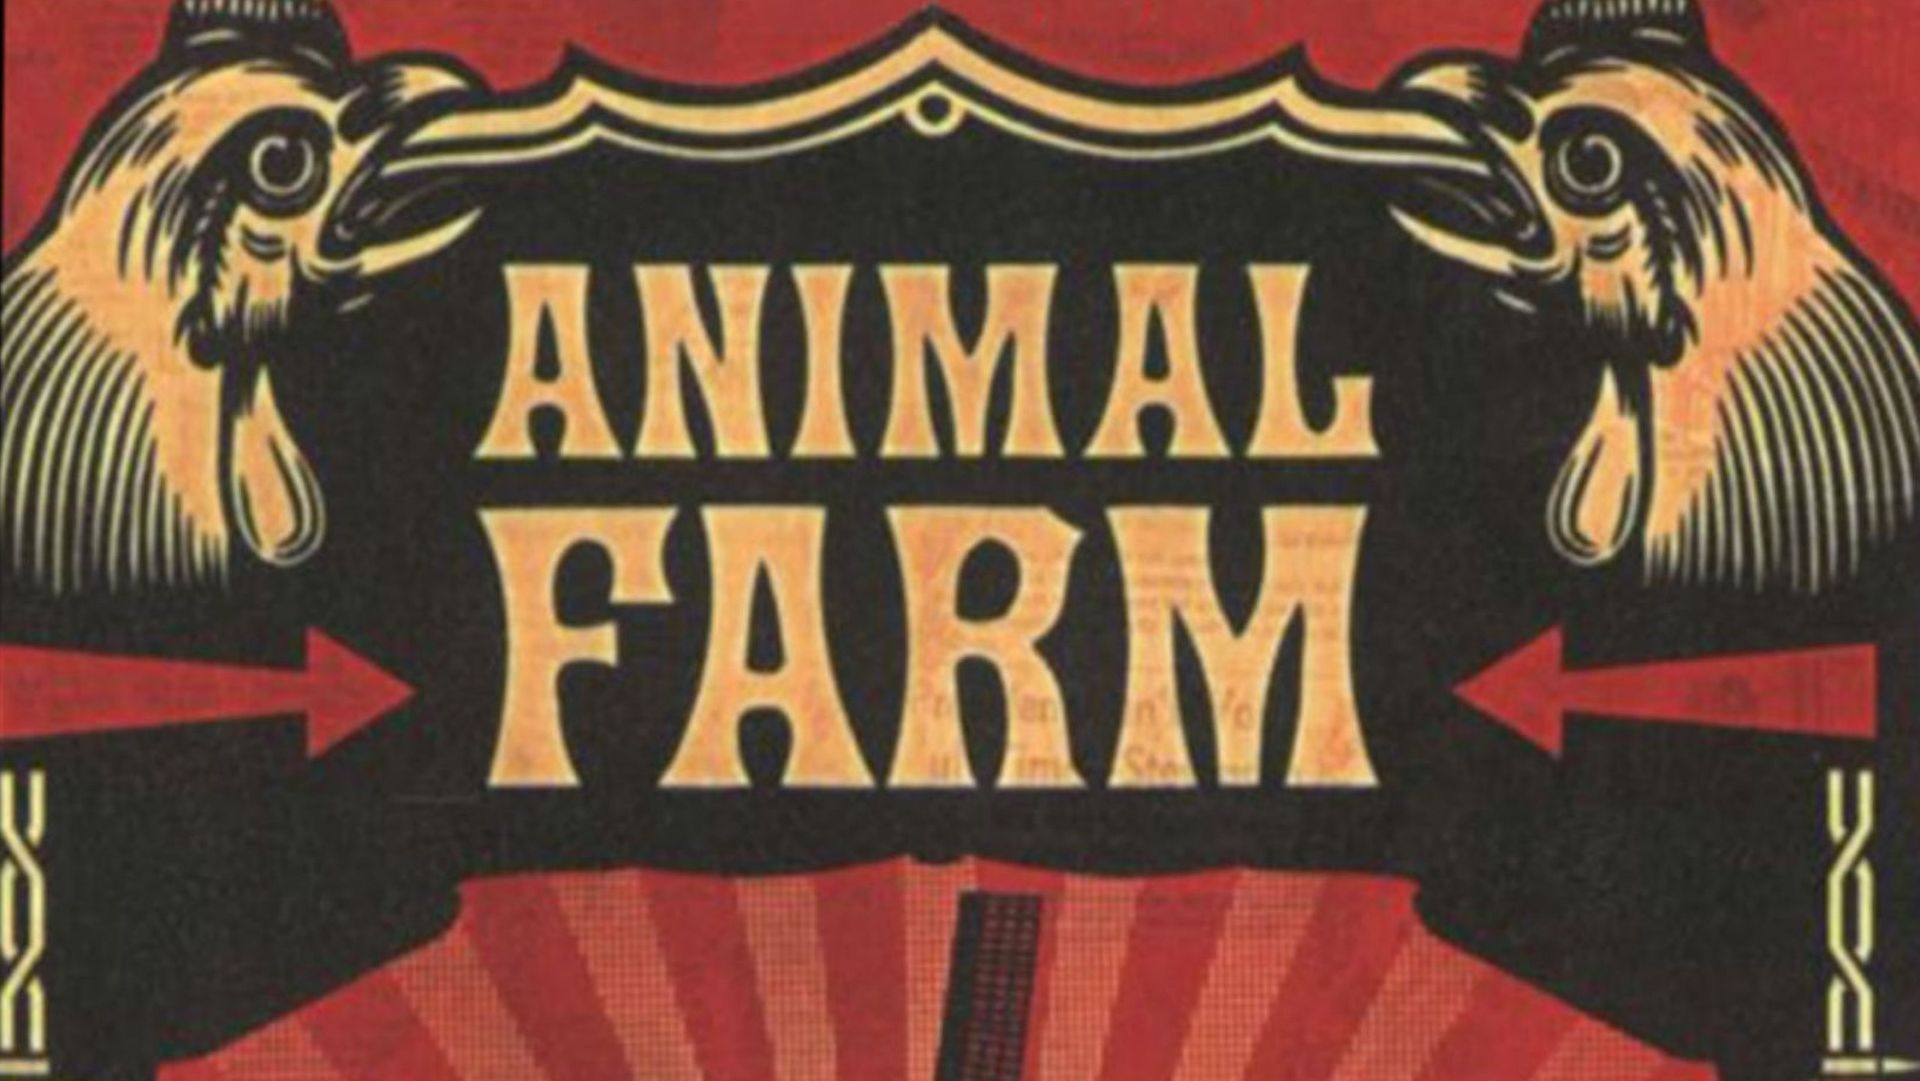 La première édition de "La ferme des animaux" de George Orwell date de 1945